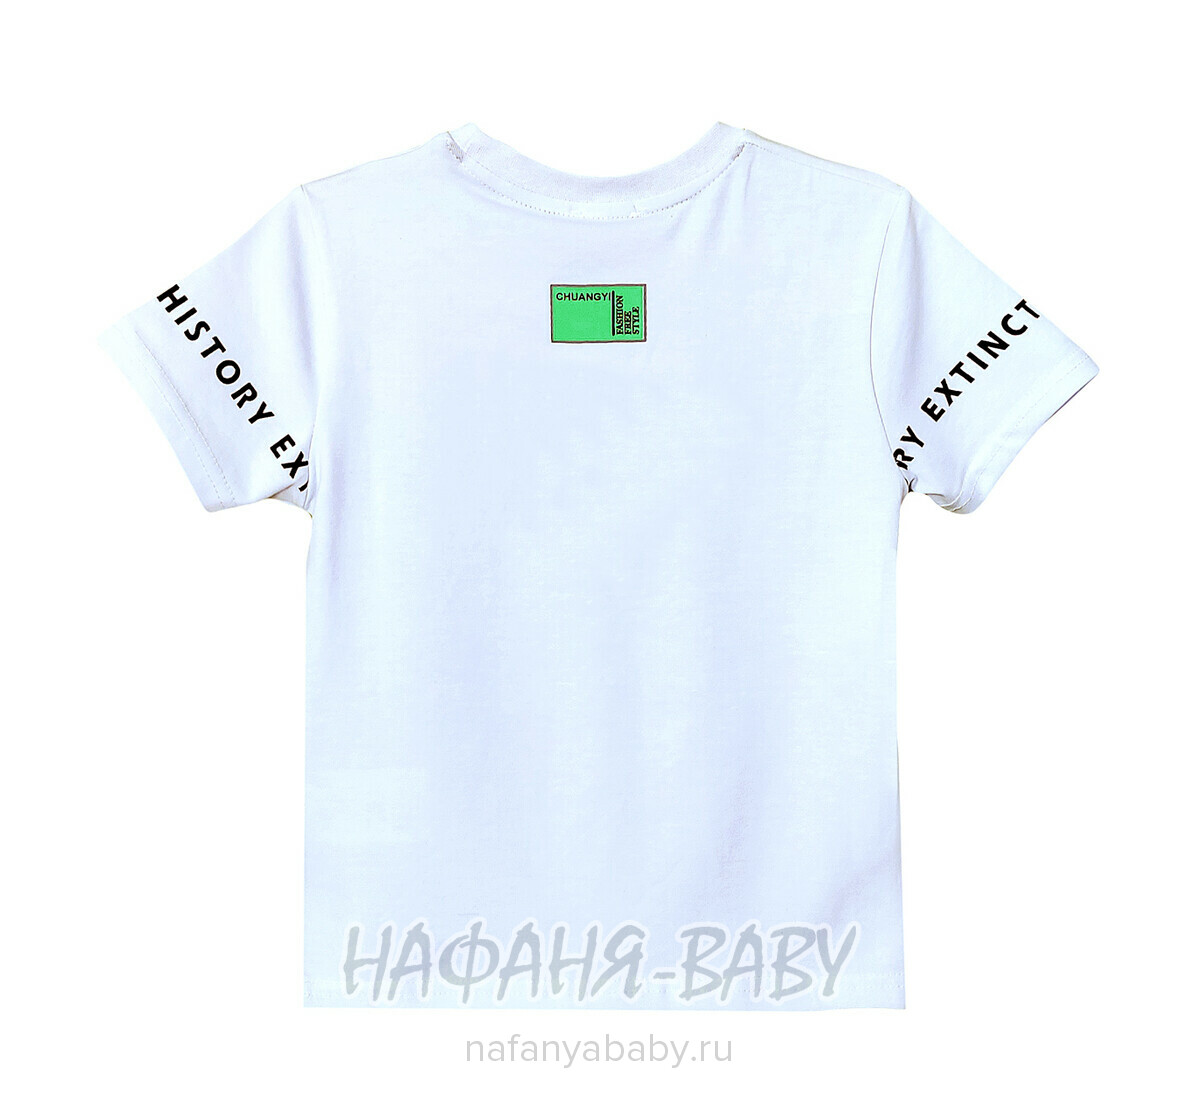 Детская футболка ALG, купить в интернет магазине Нафаня. арт: 222707 цвет белый